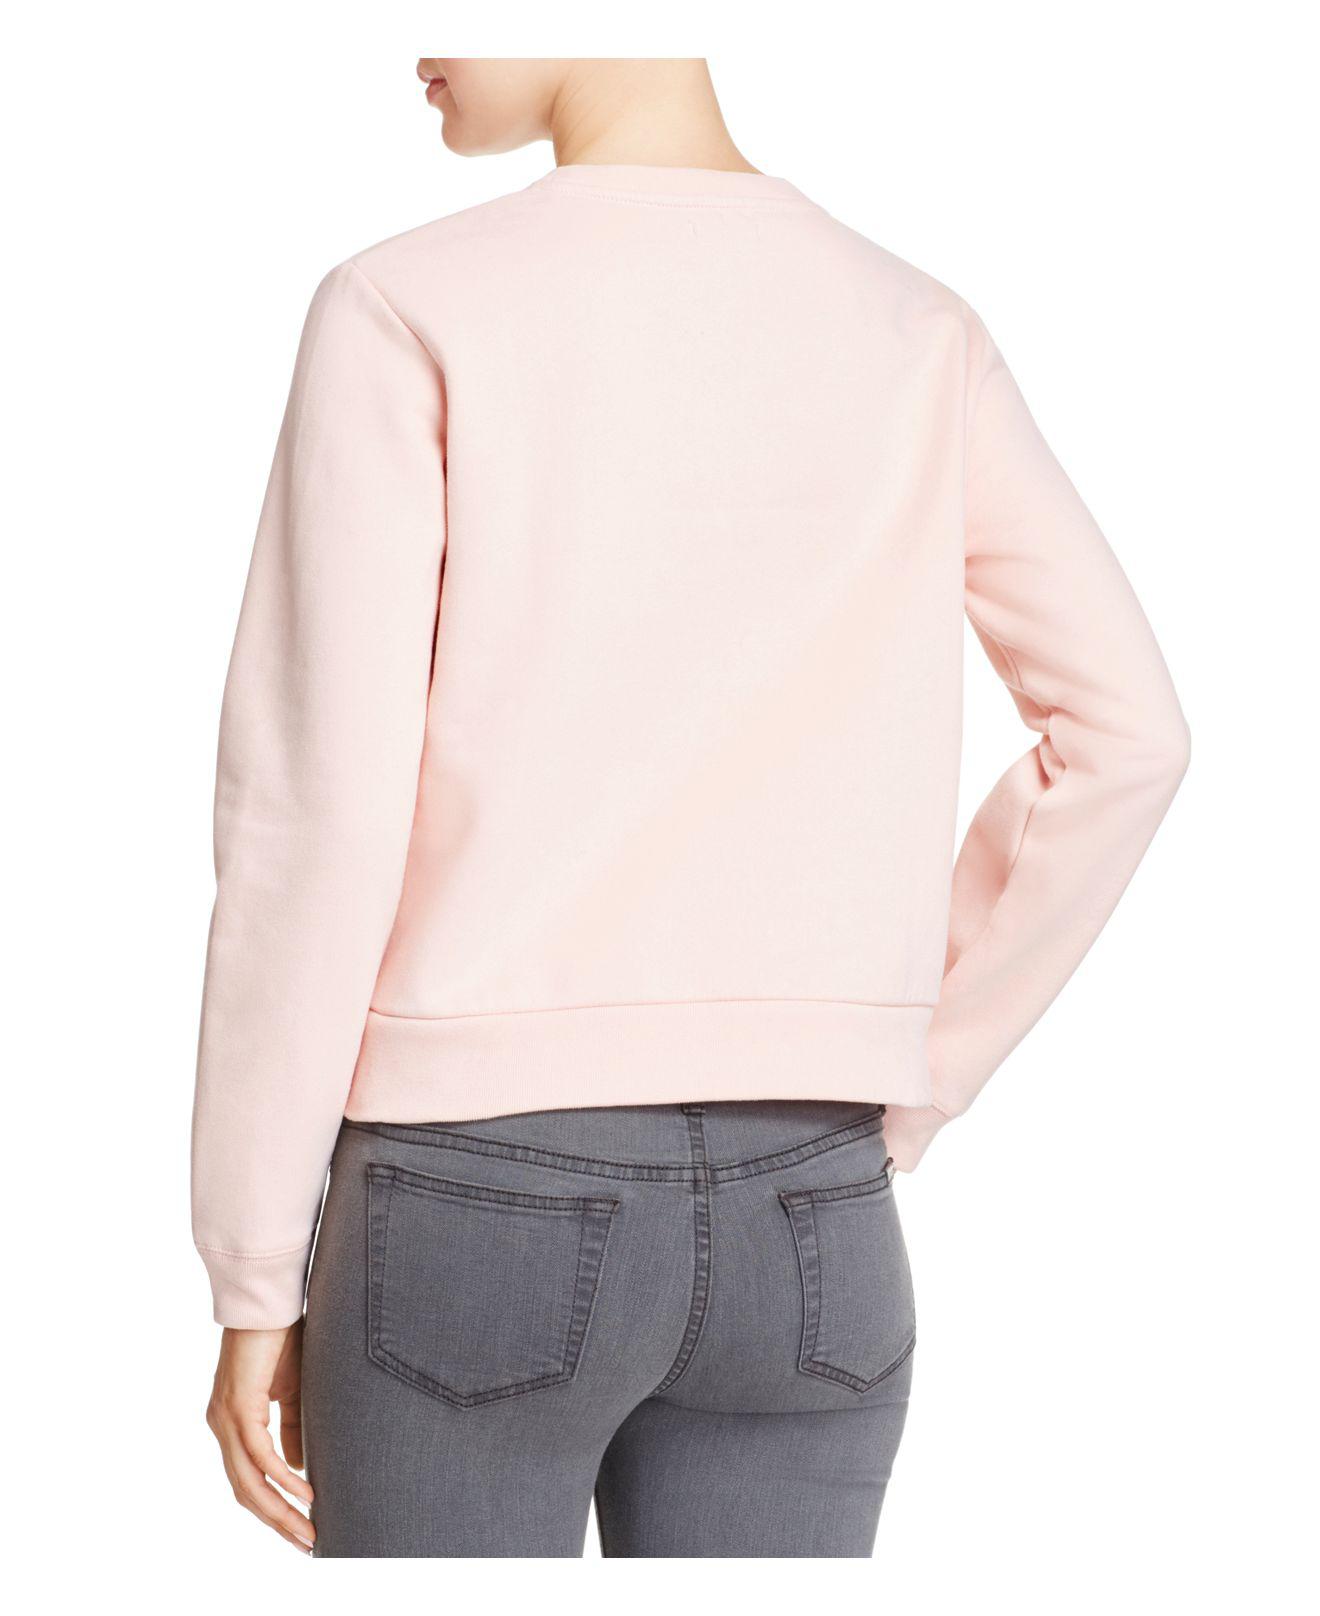 Lyst - Calvin Klein Harper Logo Cropped Sweatshirt in Pink